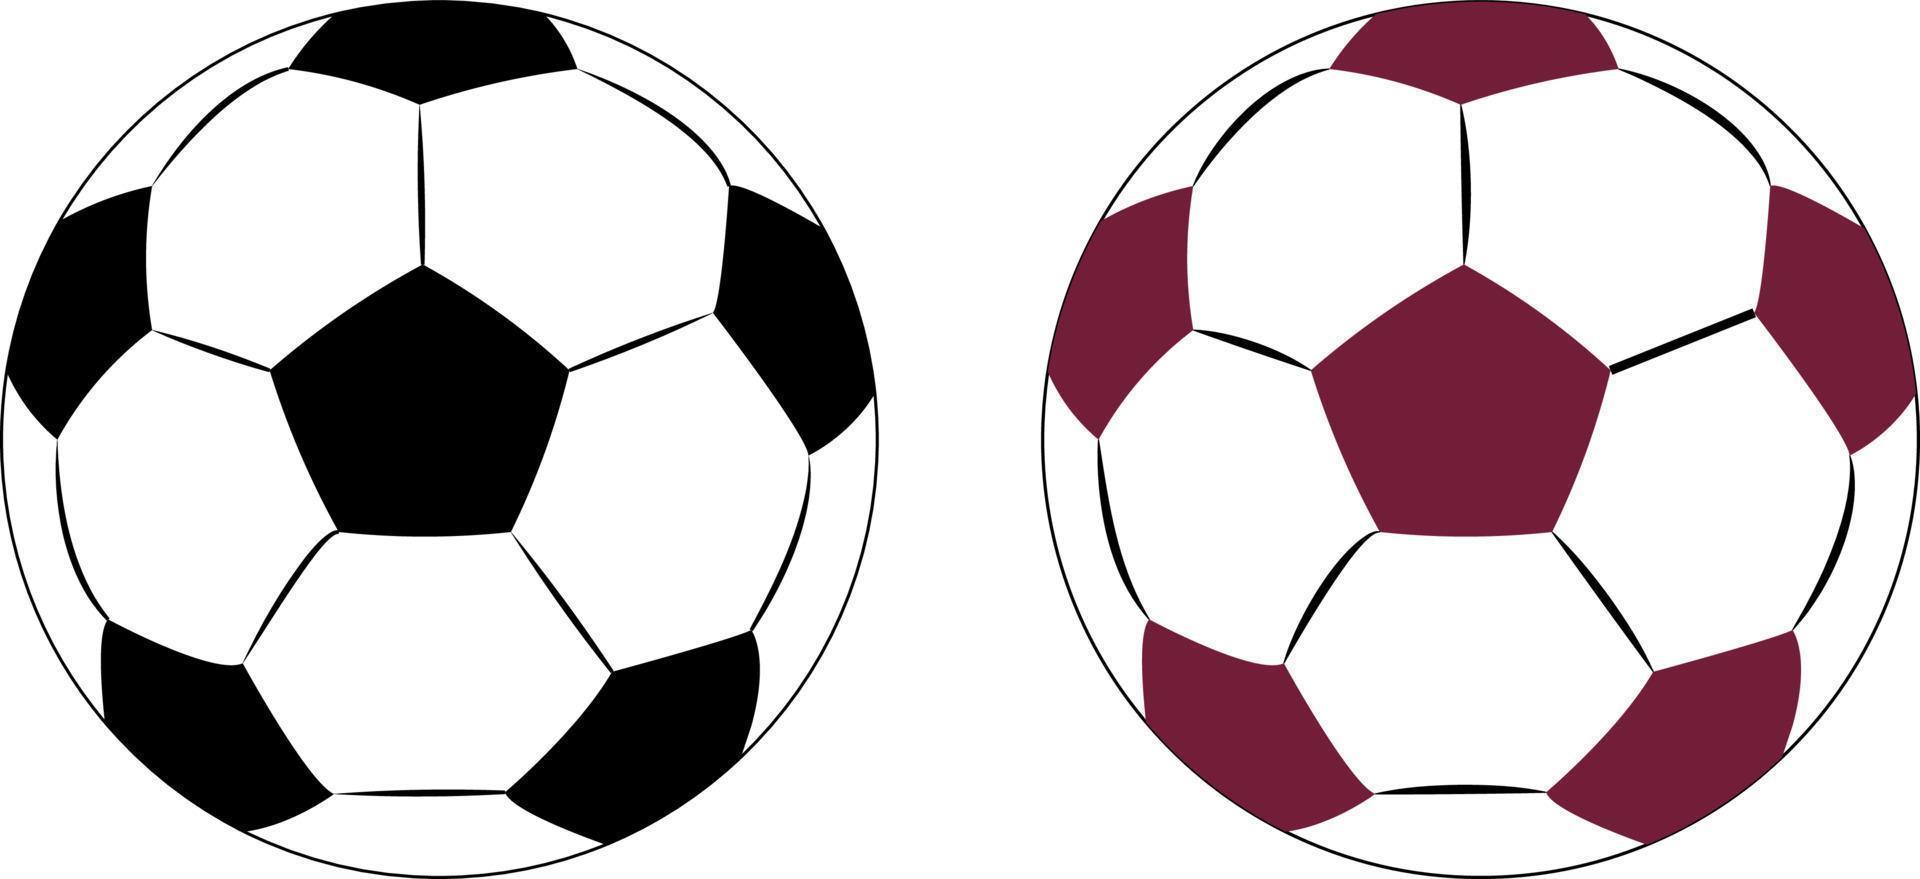 Fußballsymbole in zwei Stilen, rote und weiße Fußbälle, Fußballspielsport für den Wettbewerb. professionelles Spielerobjekt. vektorrealistische illustration lokalisiert auf weißem transparentem hintergrund. vektor